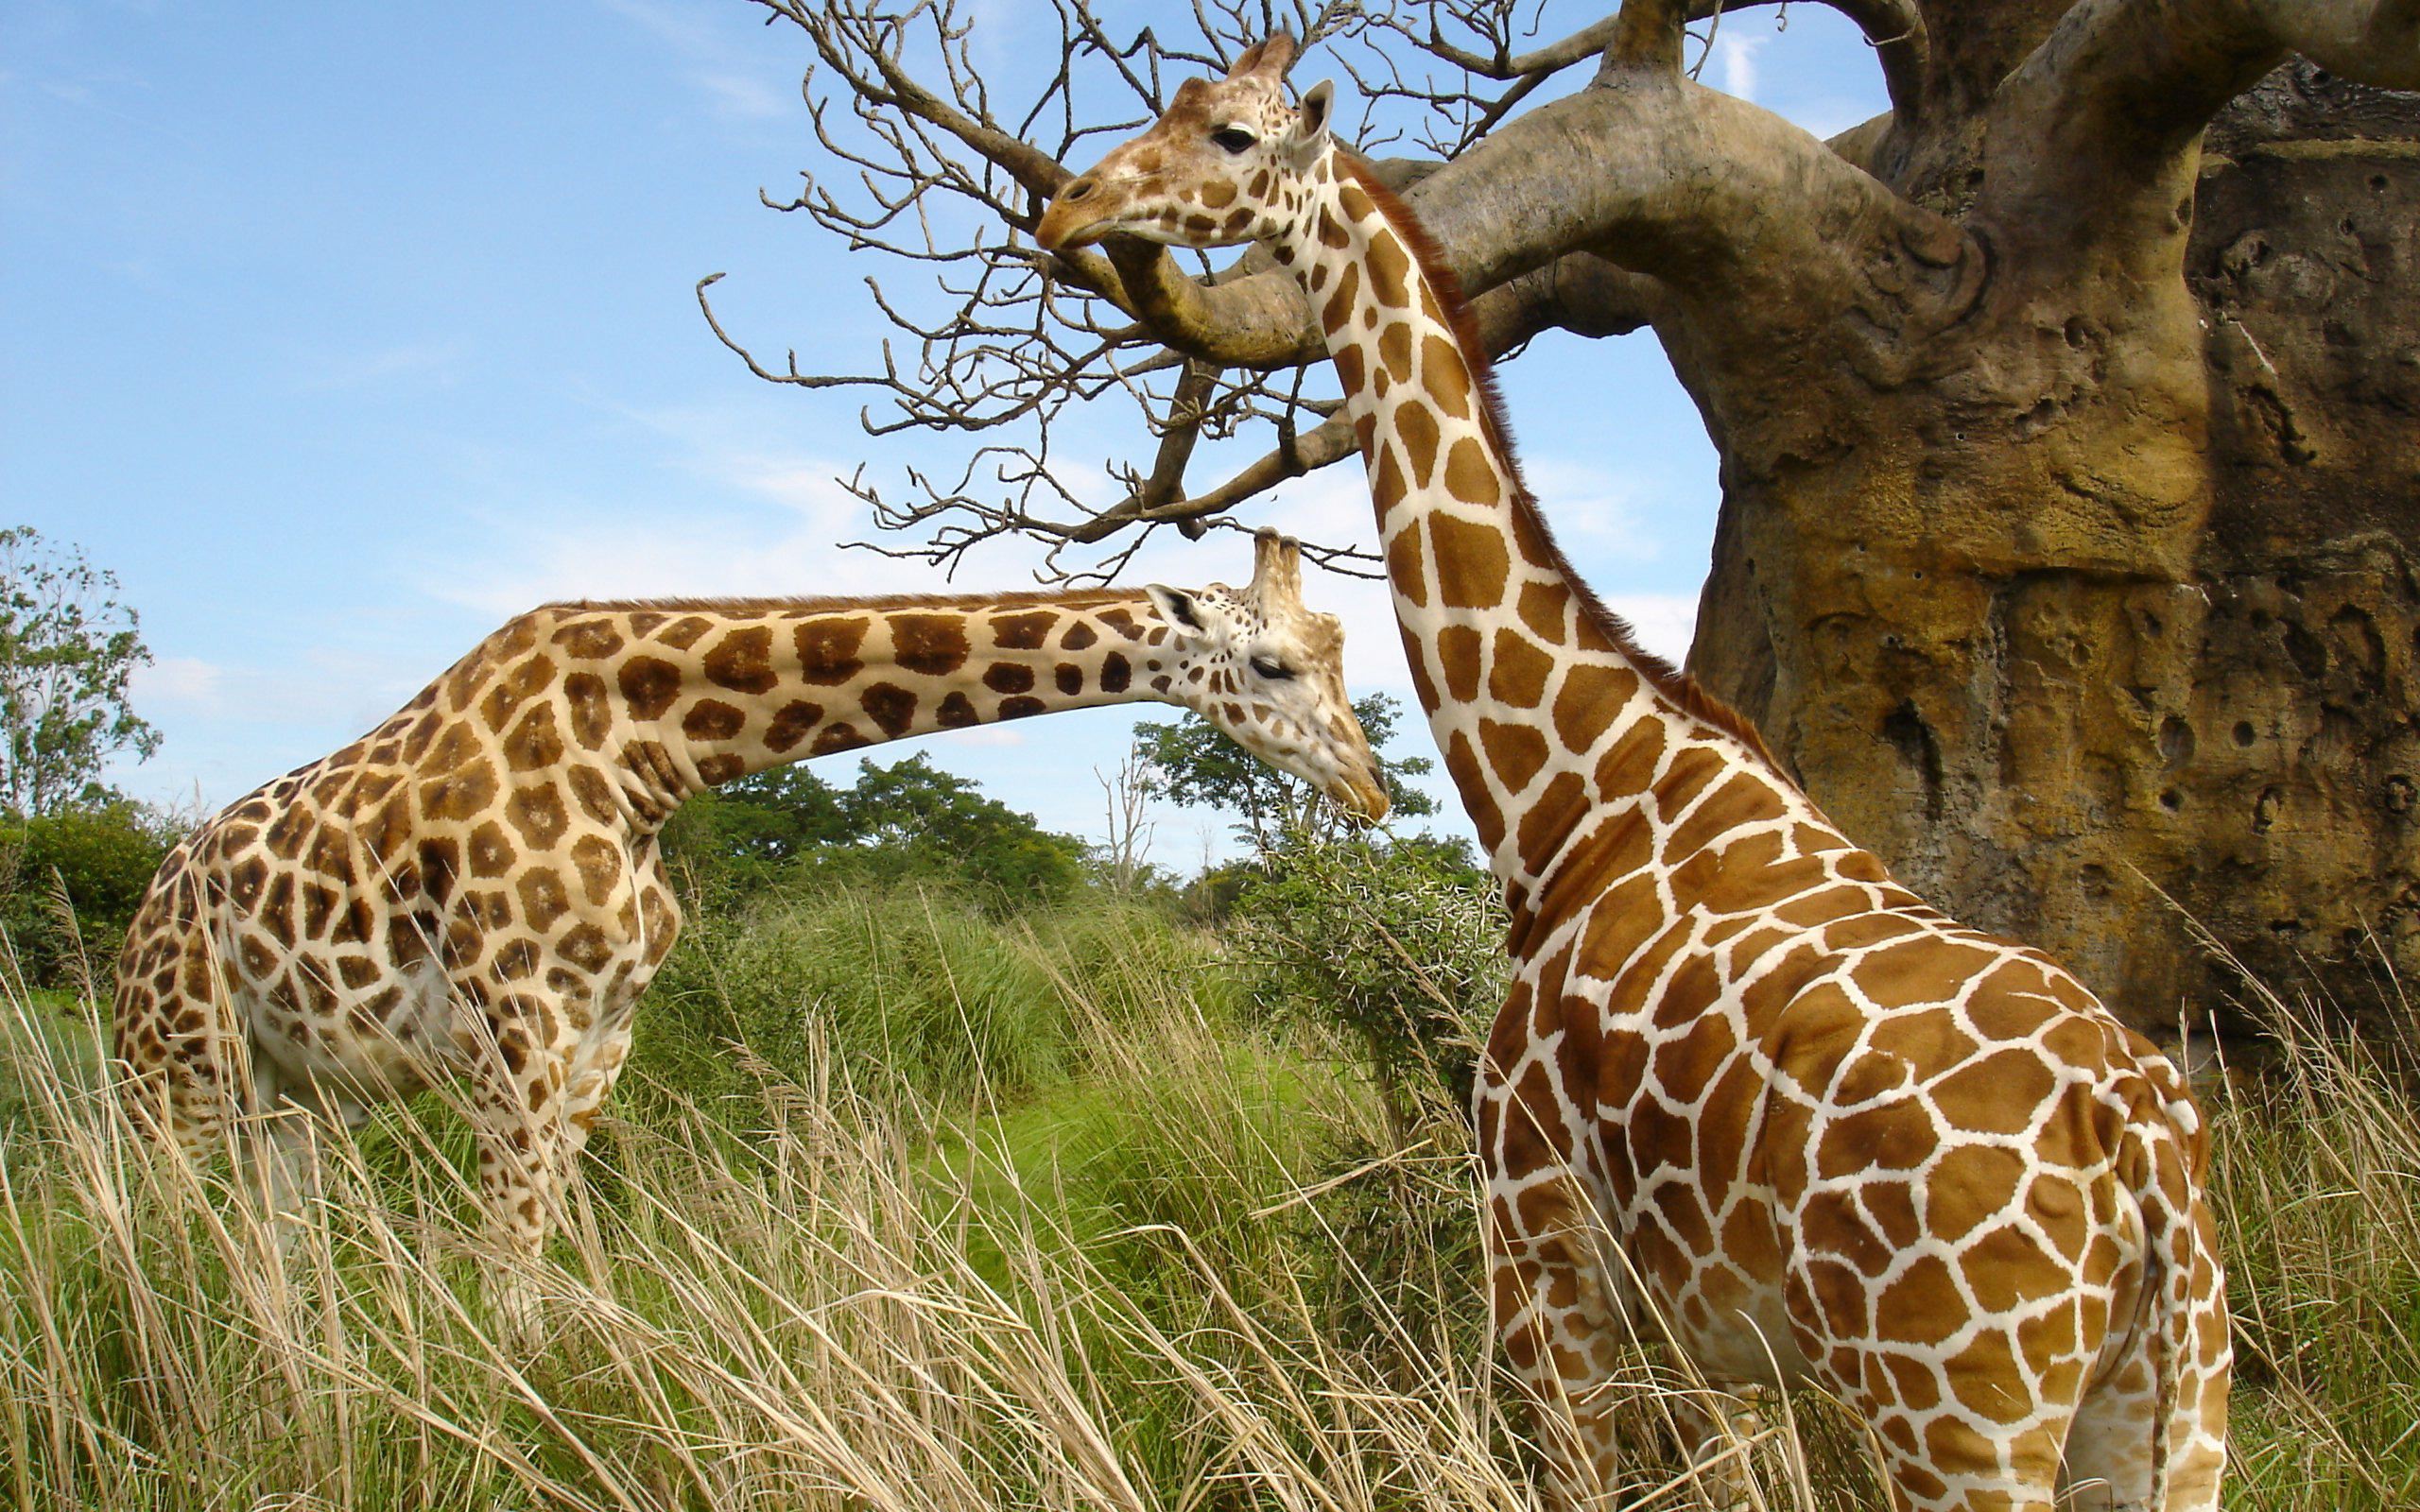 Giraffe pair207243318 - Giraffe pair - pair, Giraffe, Eyes